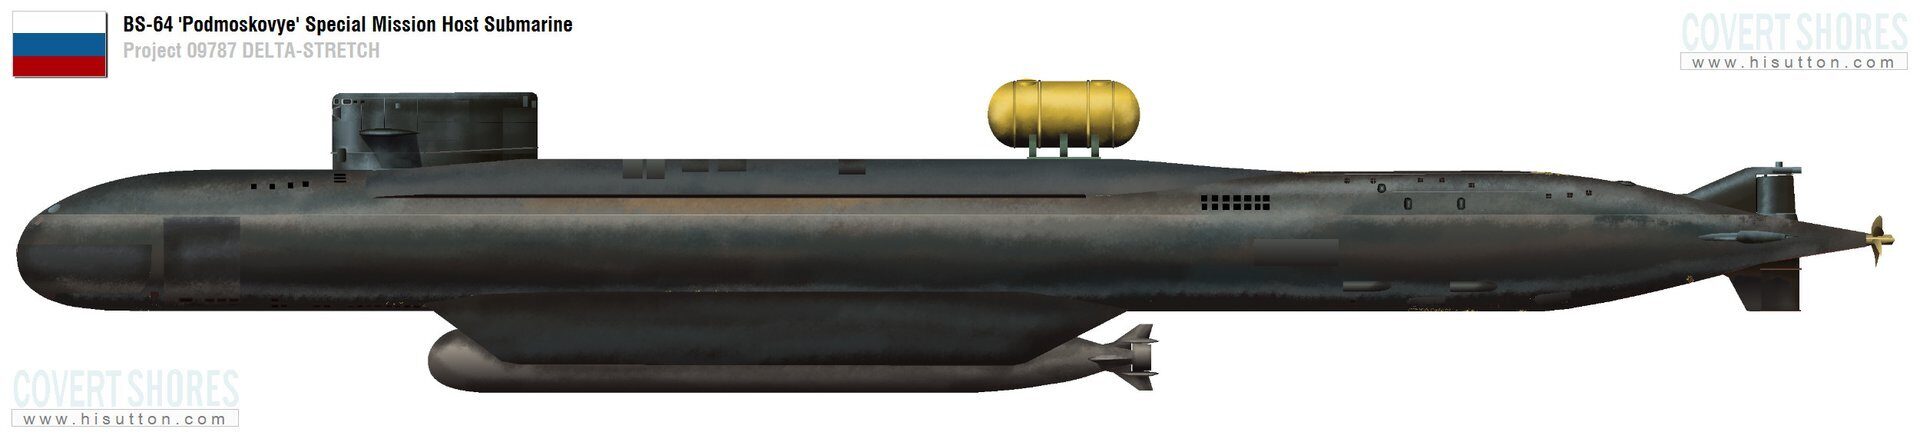 Подводная лодка класса дельта